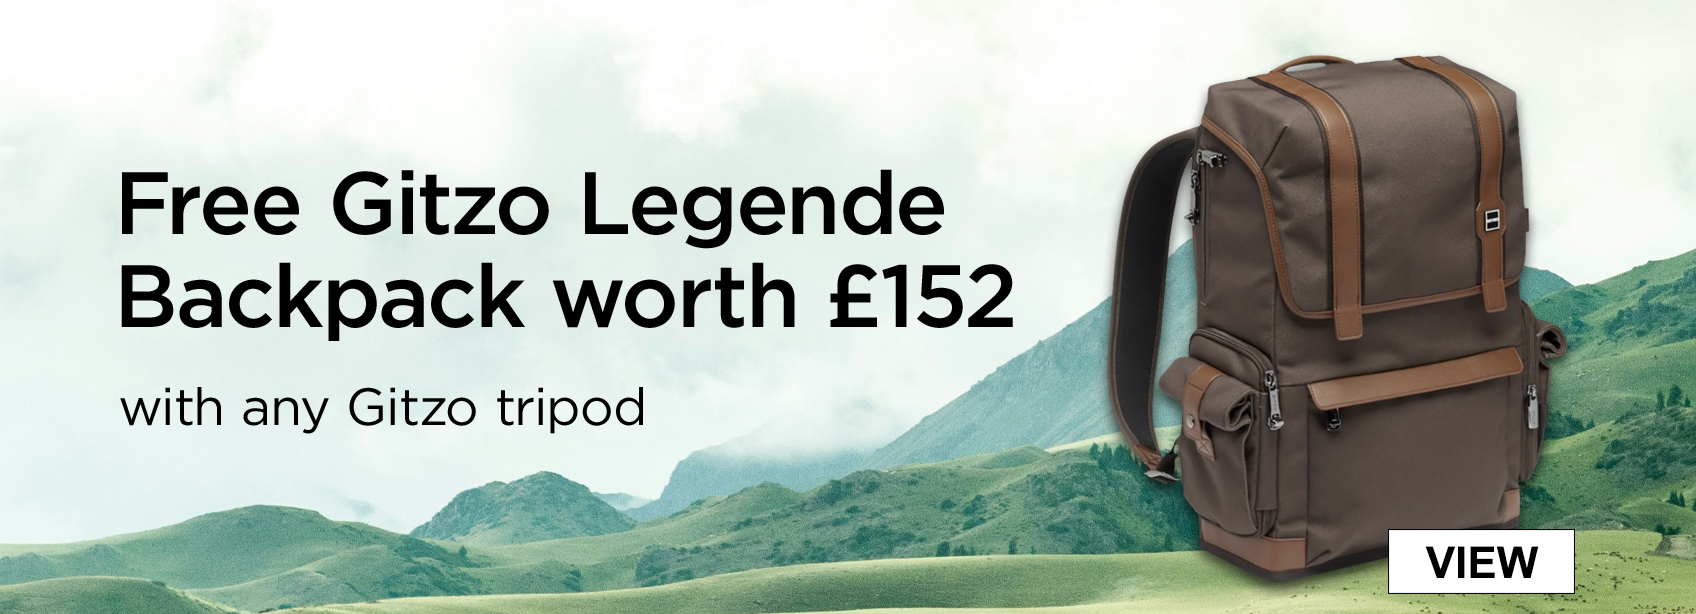 Free Gitzo Legende Backpack worth £152 with any Gitzo Tripod